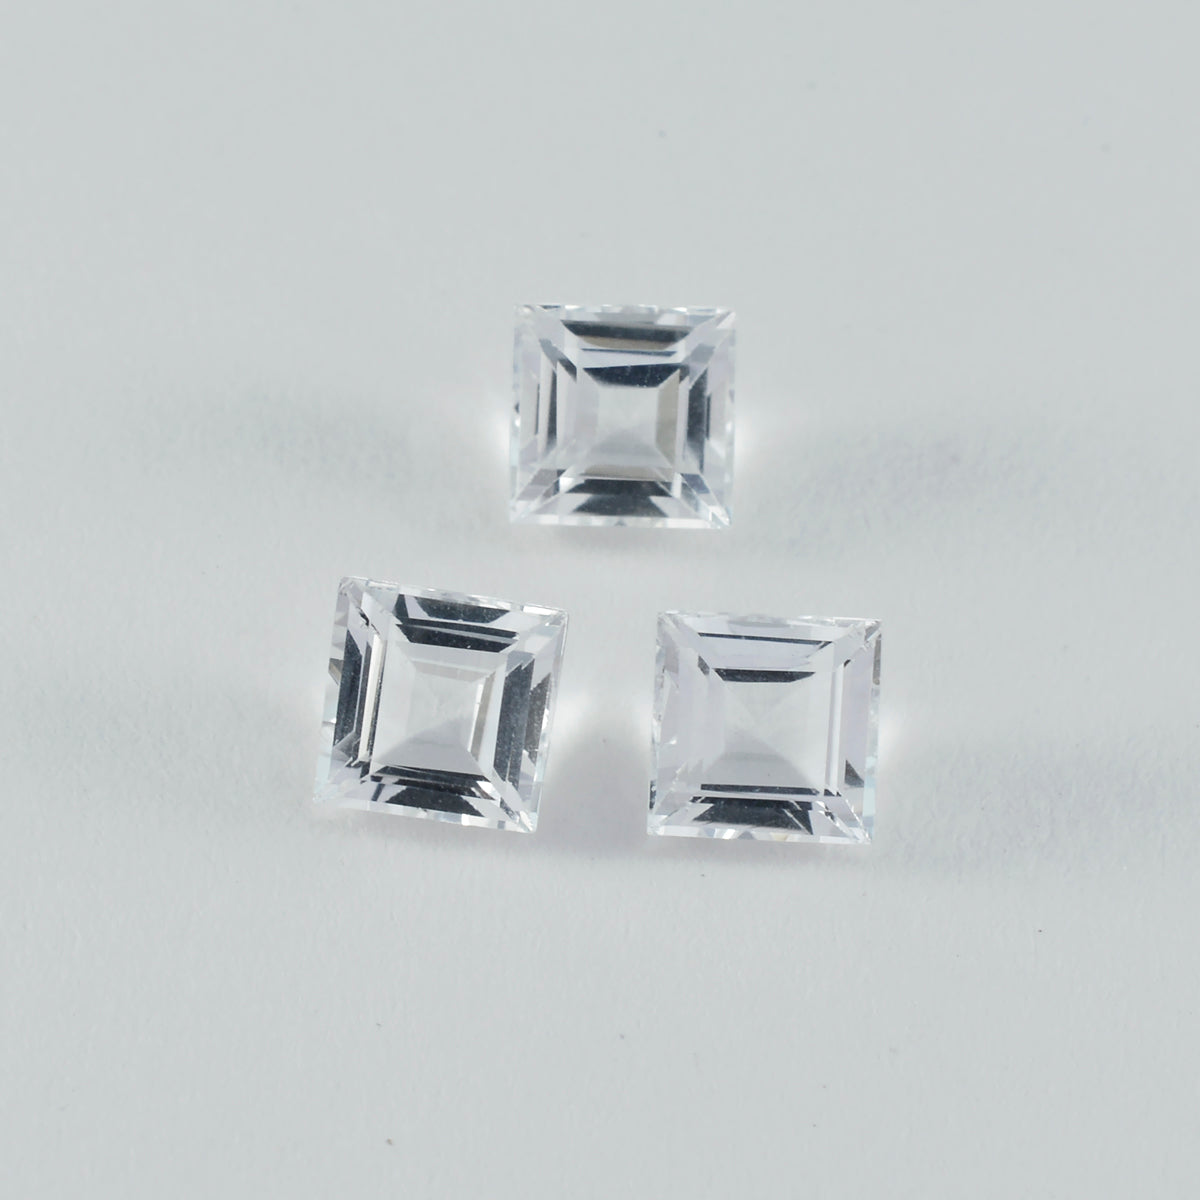 Riyogems 1 pieza de cuarzo de cristal blanco facetado 11x11 mm forma cuadrada piedra preciosa de calidad asombrosa